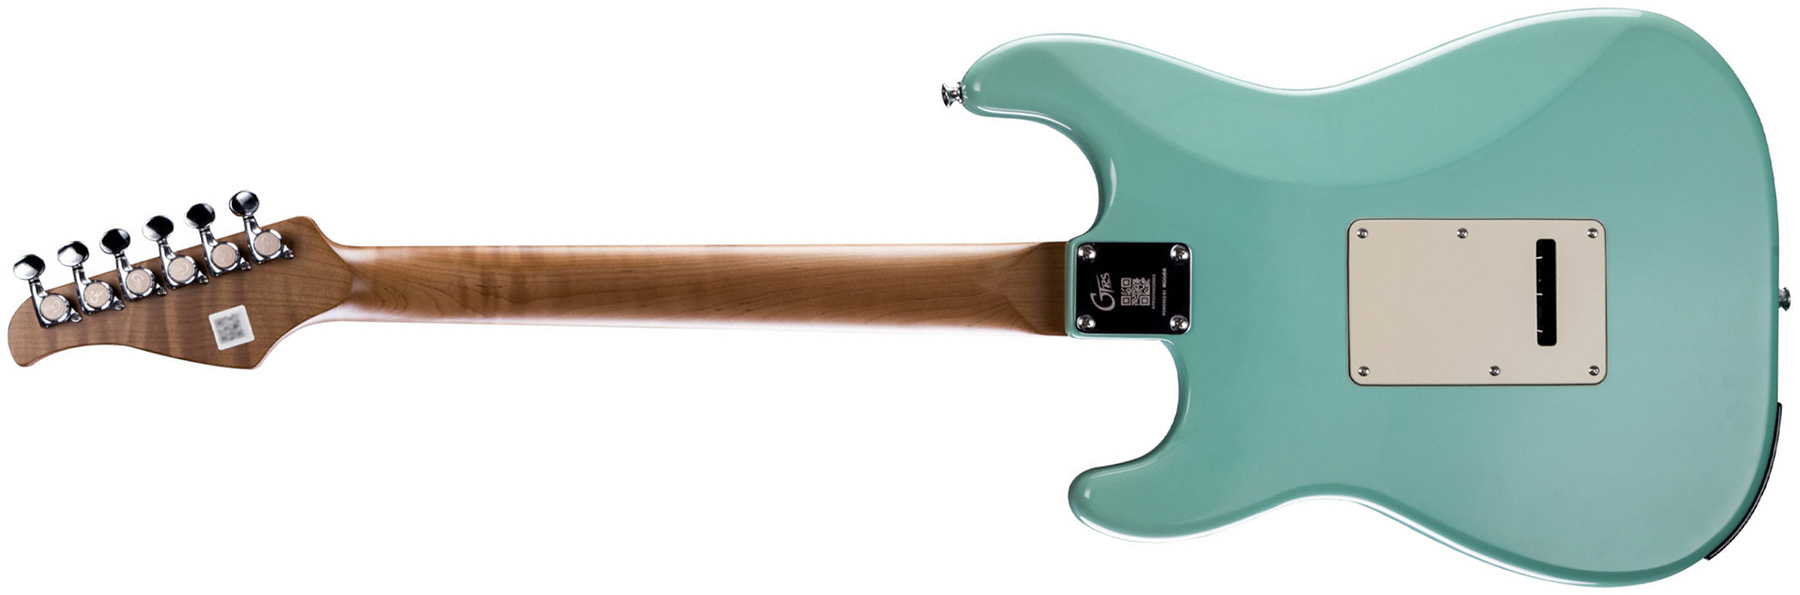 Mooer Gtrs P800 Pro Intelligent Guitar Hss Trem Rw - Mint Green - Guitare Électrique ModÉlisation & Midi - Variation 1